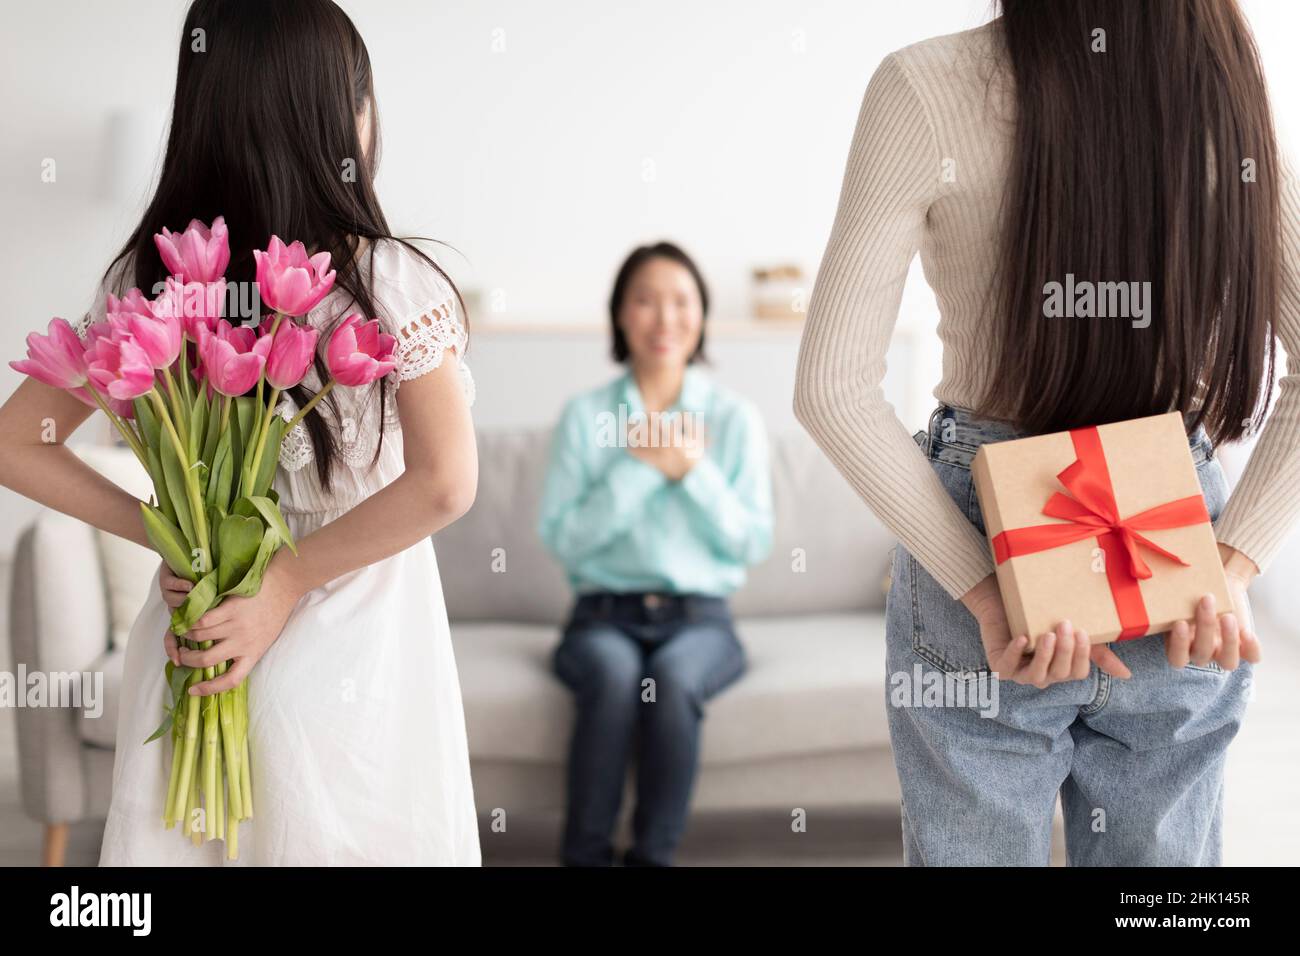 La giovane donna e la figlia nascondono il dono e i tulipani dietro le spalle, congratulandosi con la donna matura con le vacanze primaverili Foto Stock